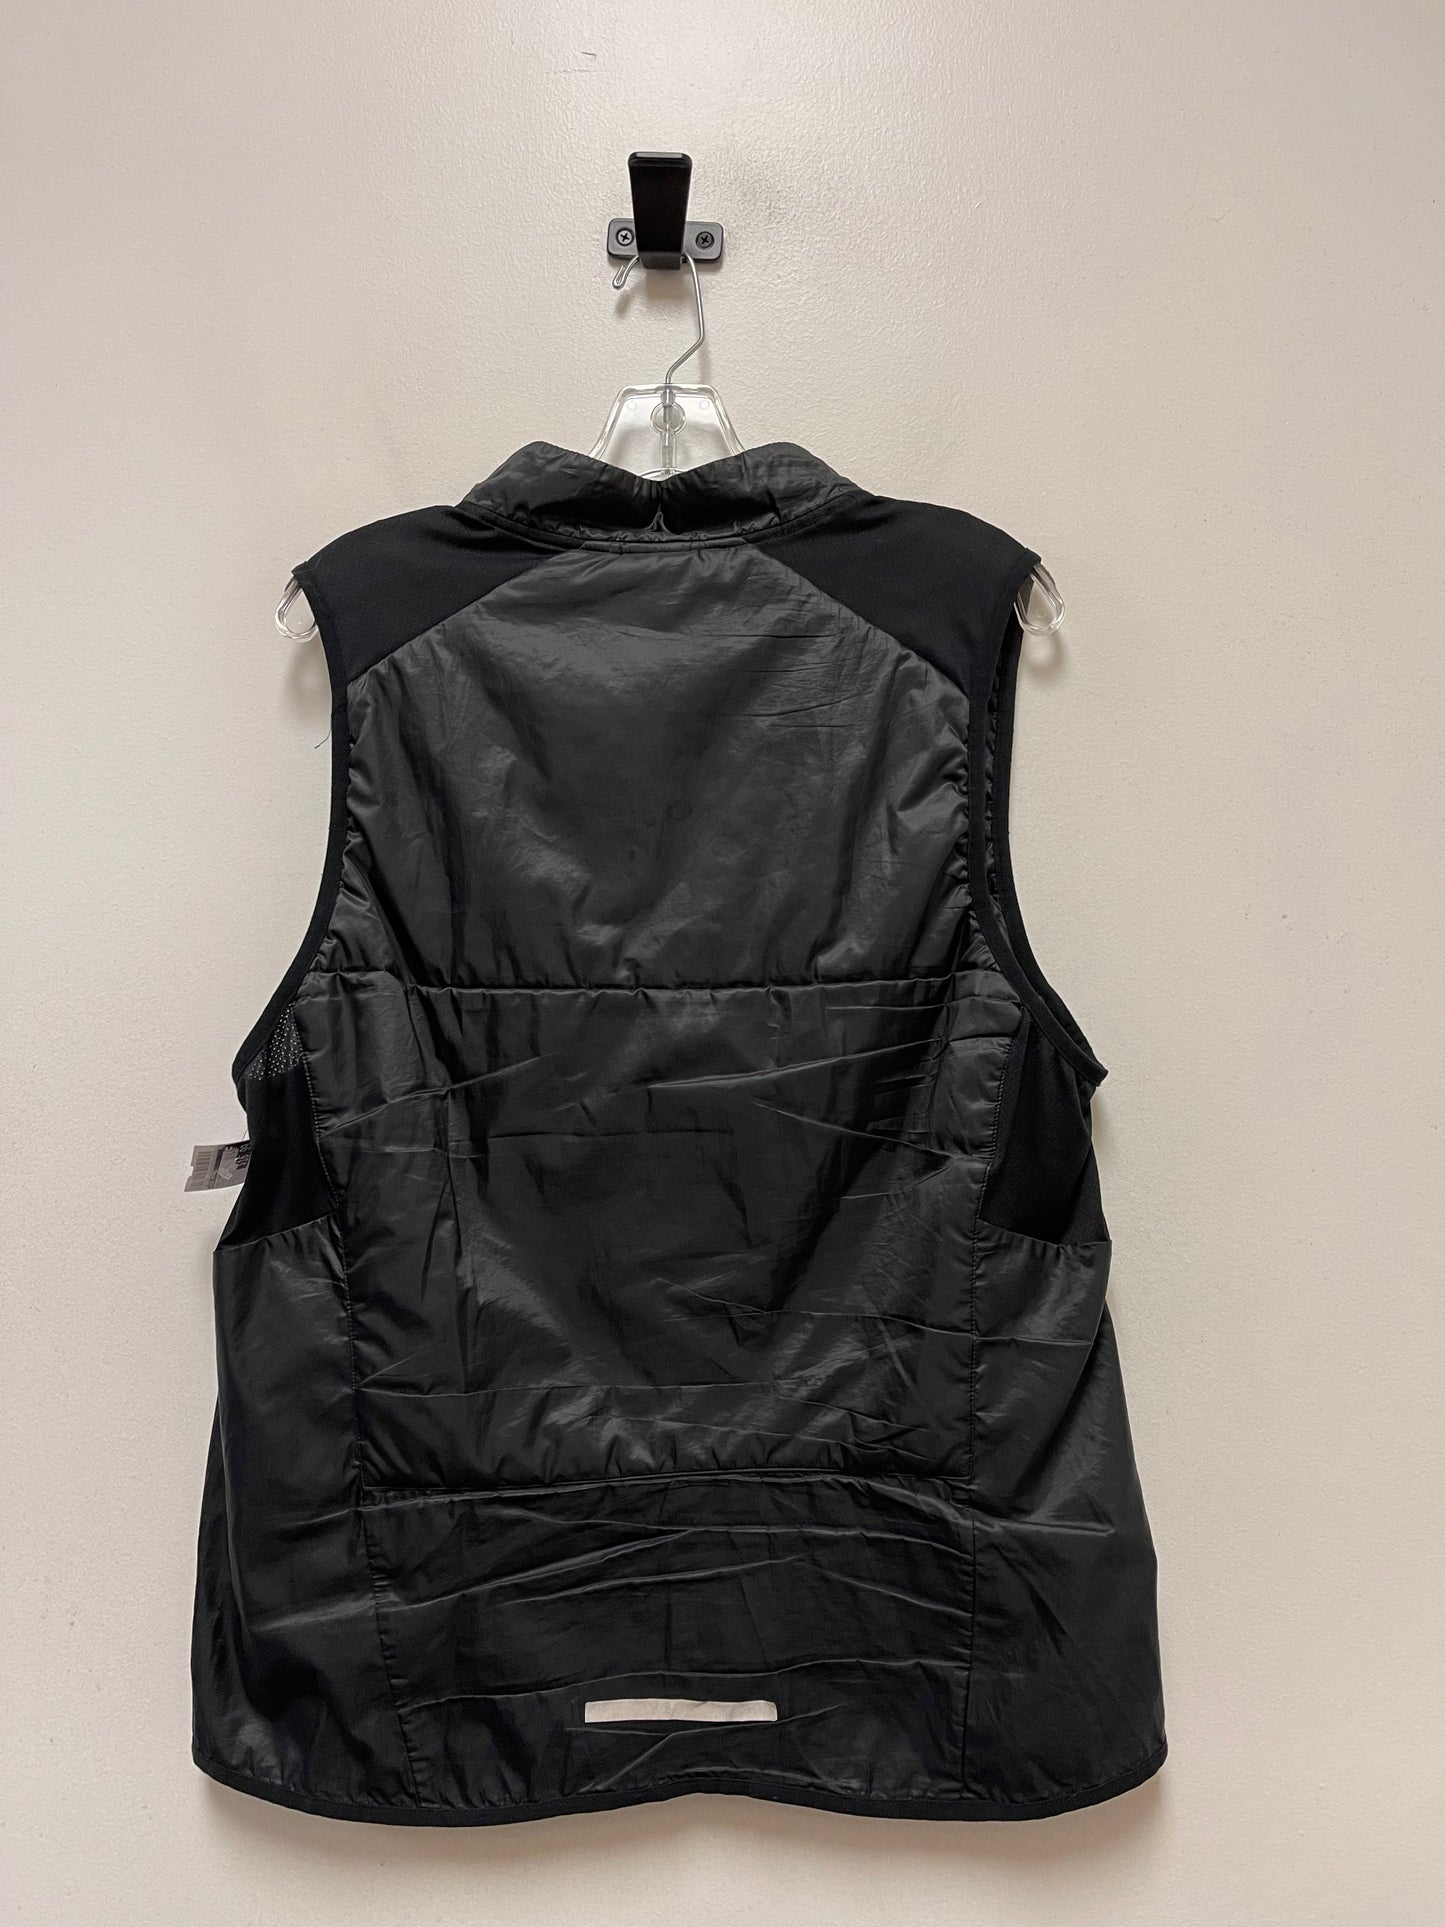 Black Vest Other Nike Apparel, Size L